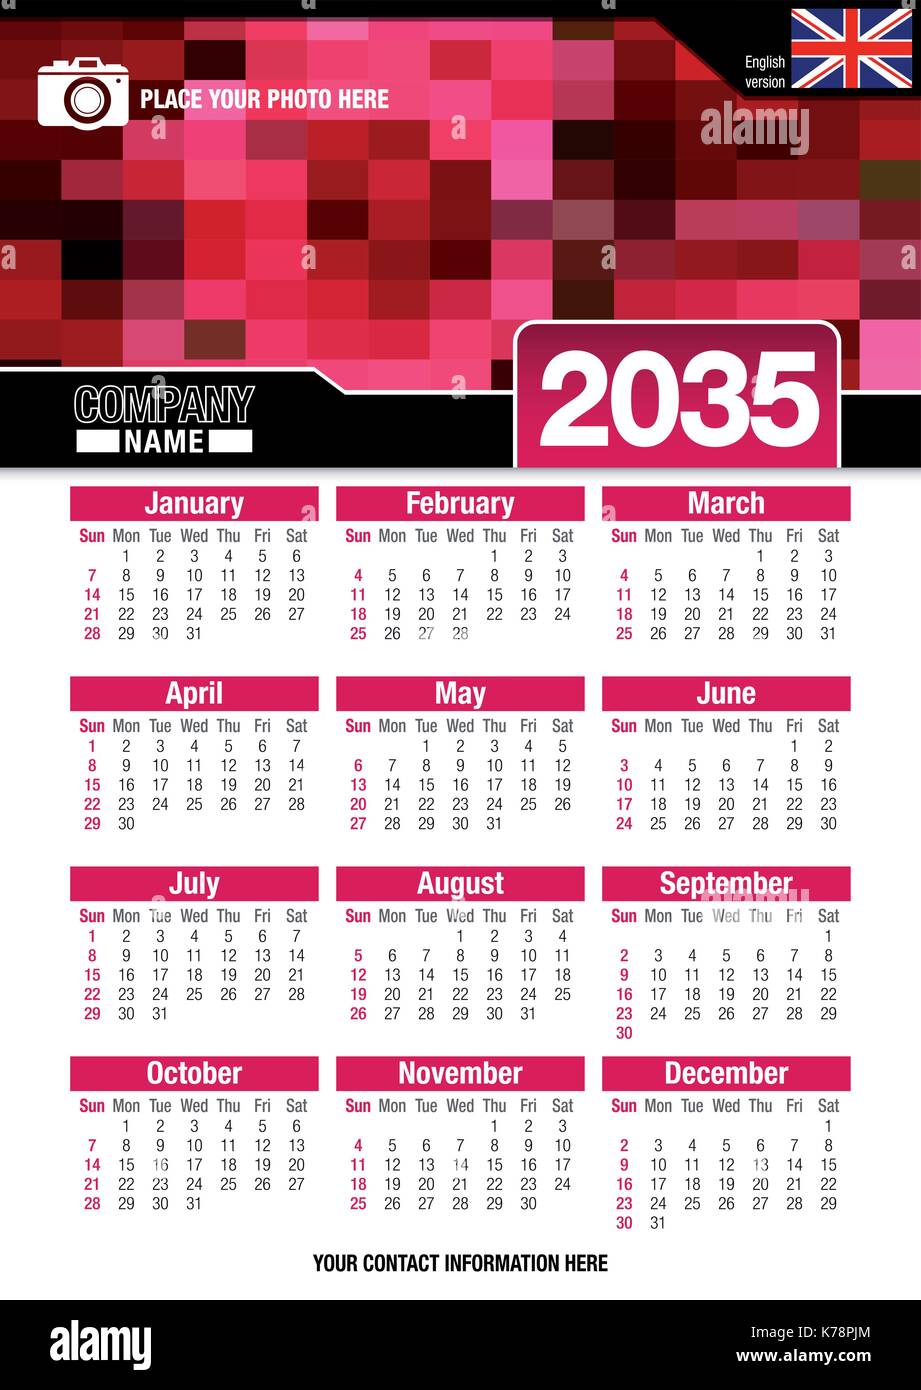 Utile calendario da parete 2035 con design di colori rosso mosaico. Formato A4 verticale. Dimensioni: 210mm x 297mm. Versione Inglese - immagine vettoriale Illustrazione Vettoriale